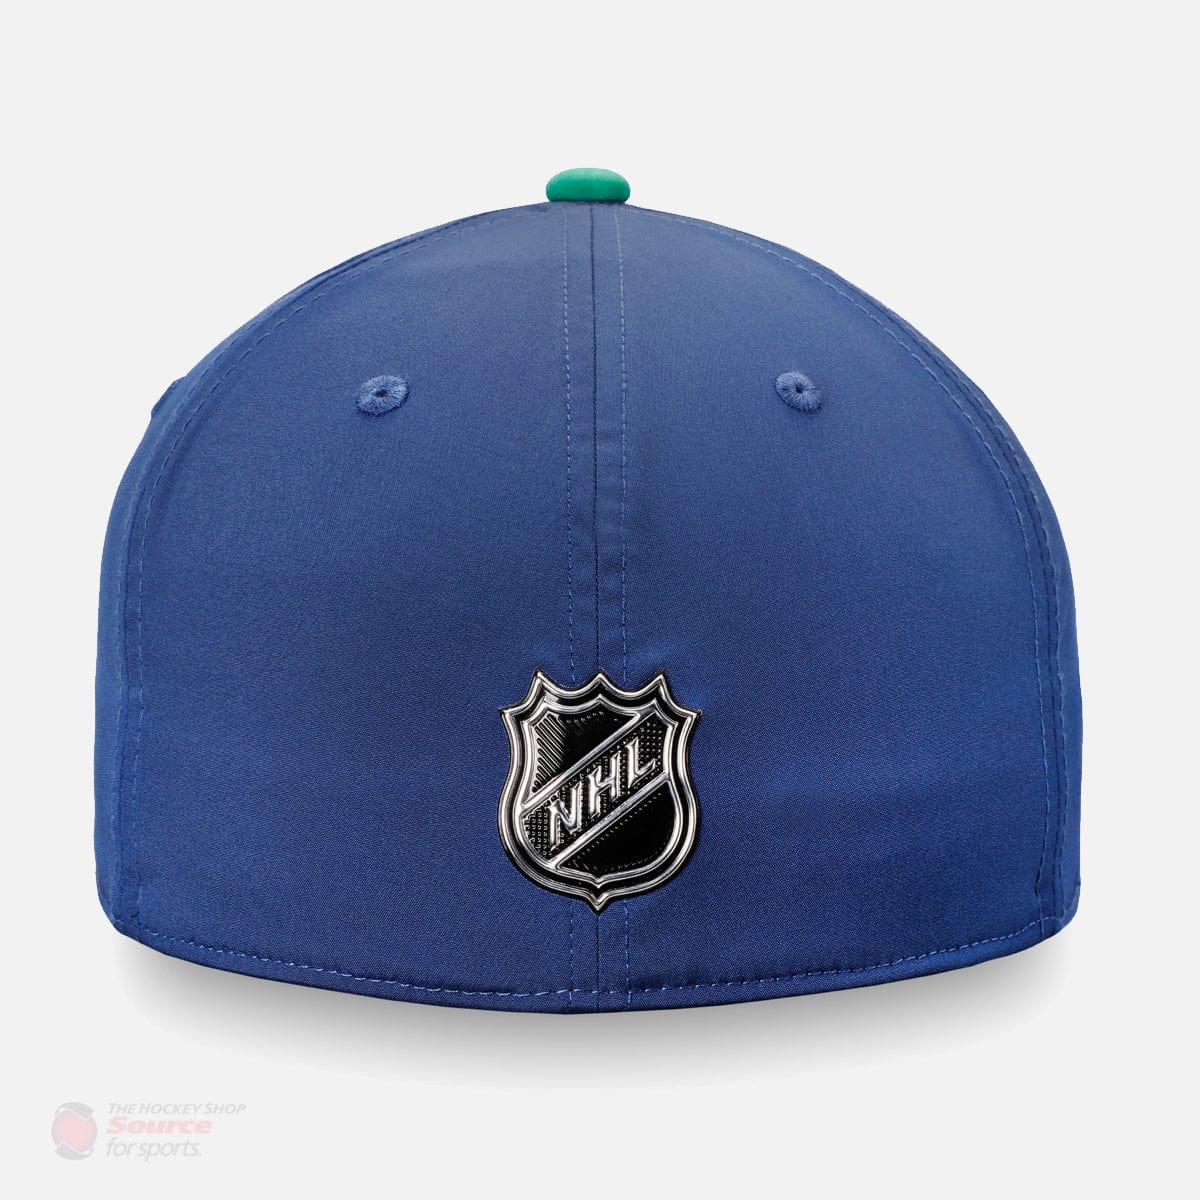 Fanatics NHL 2019 Draft Flexfit Hat